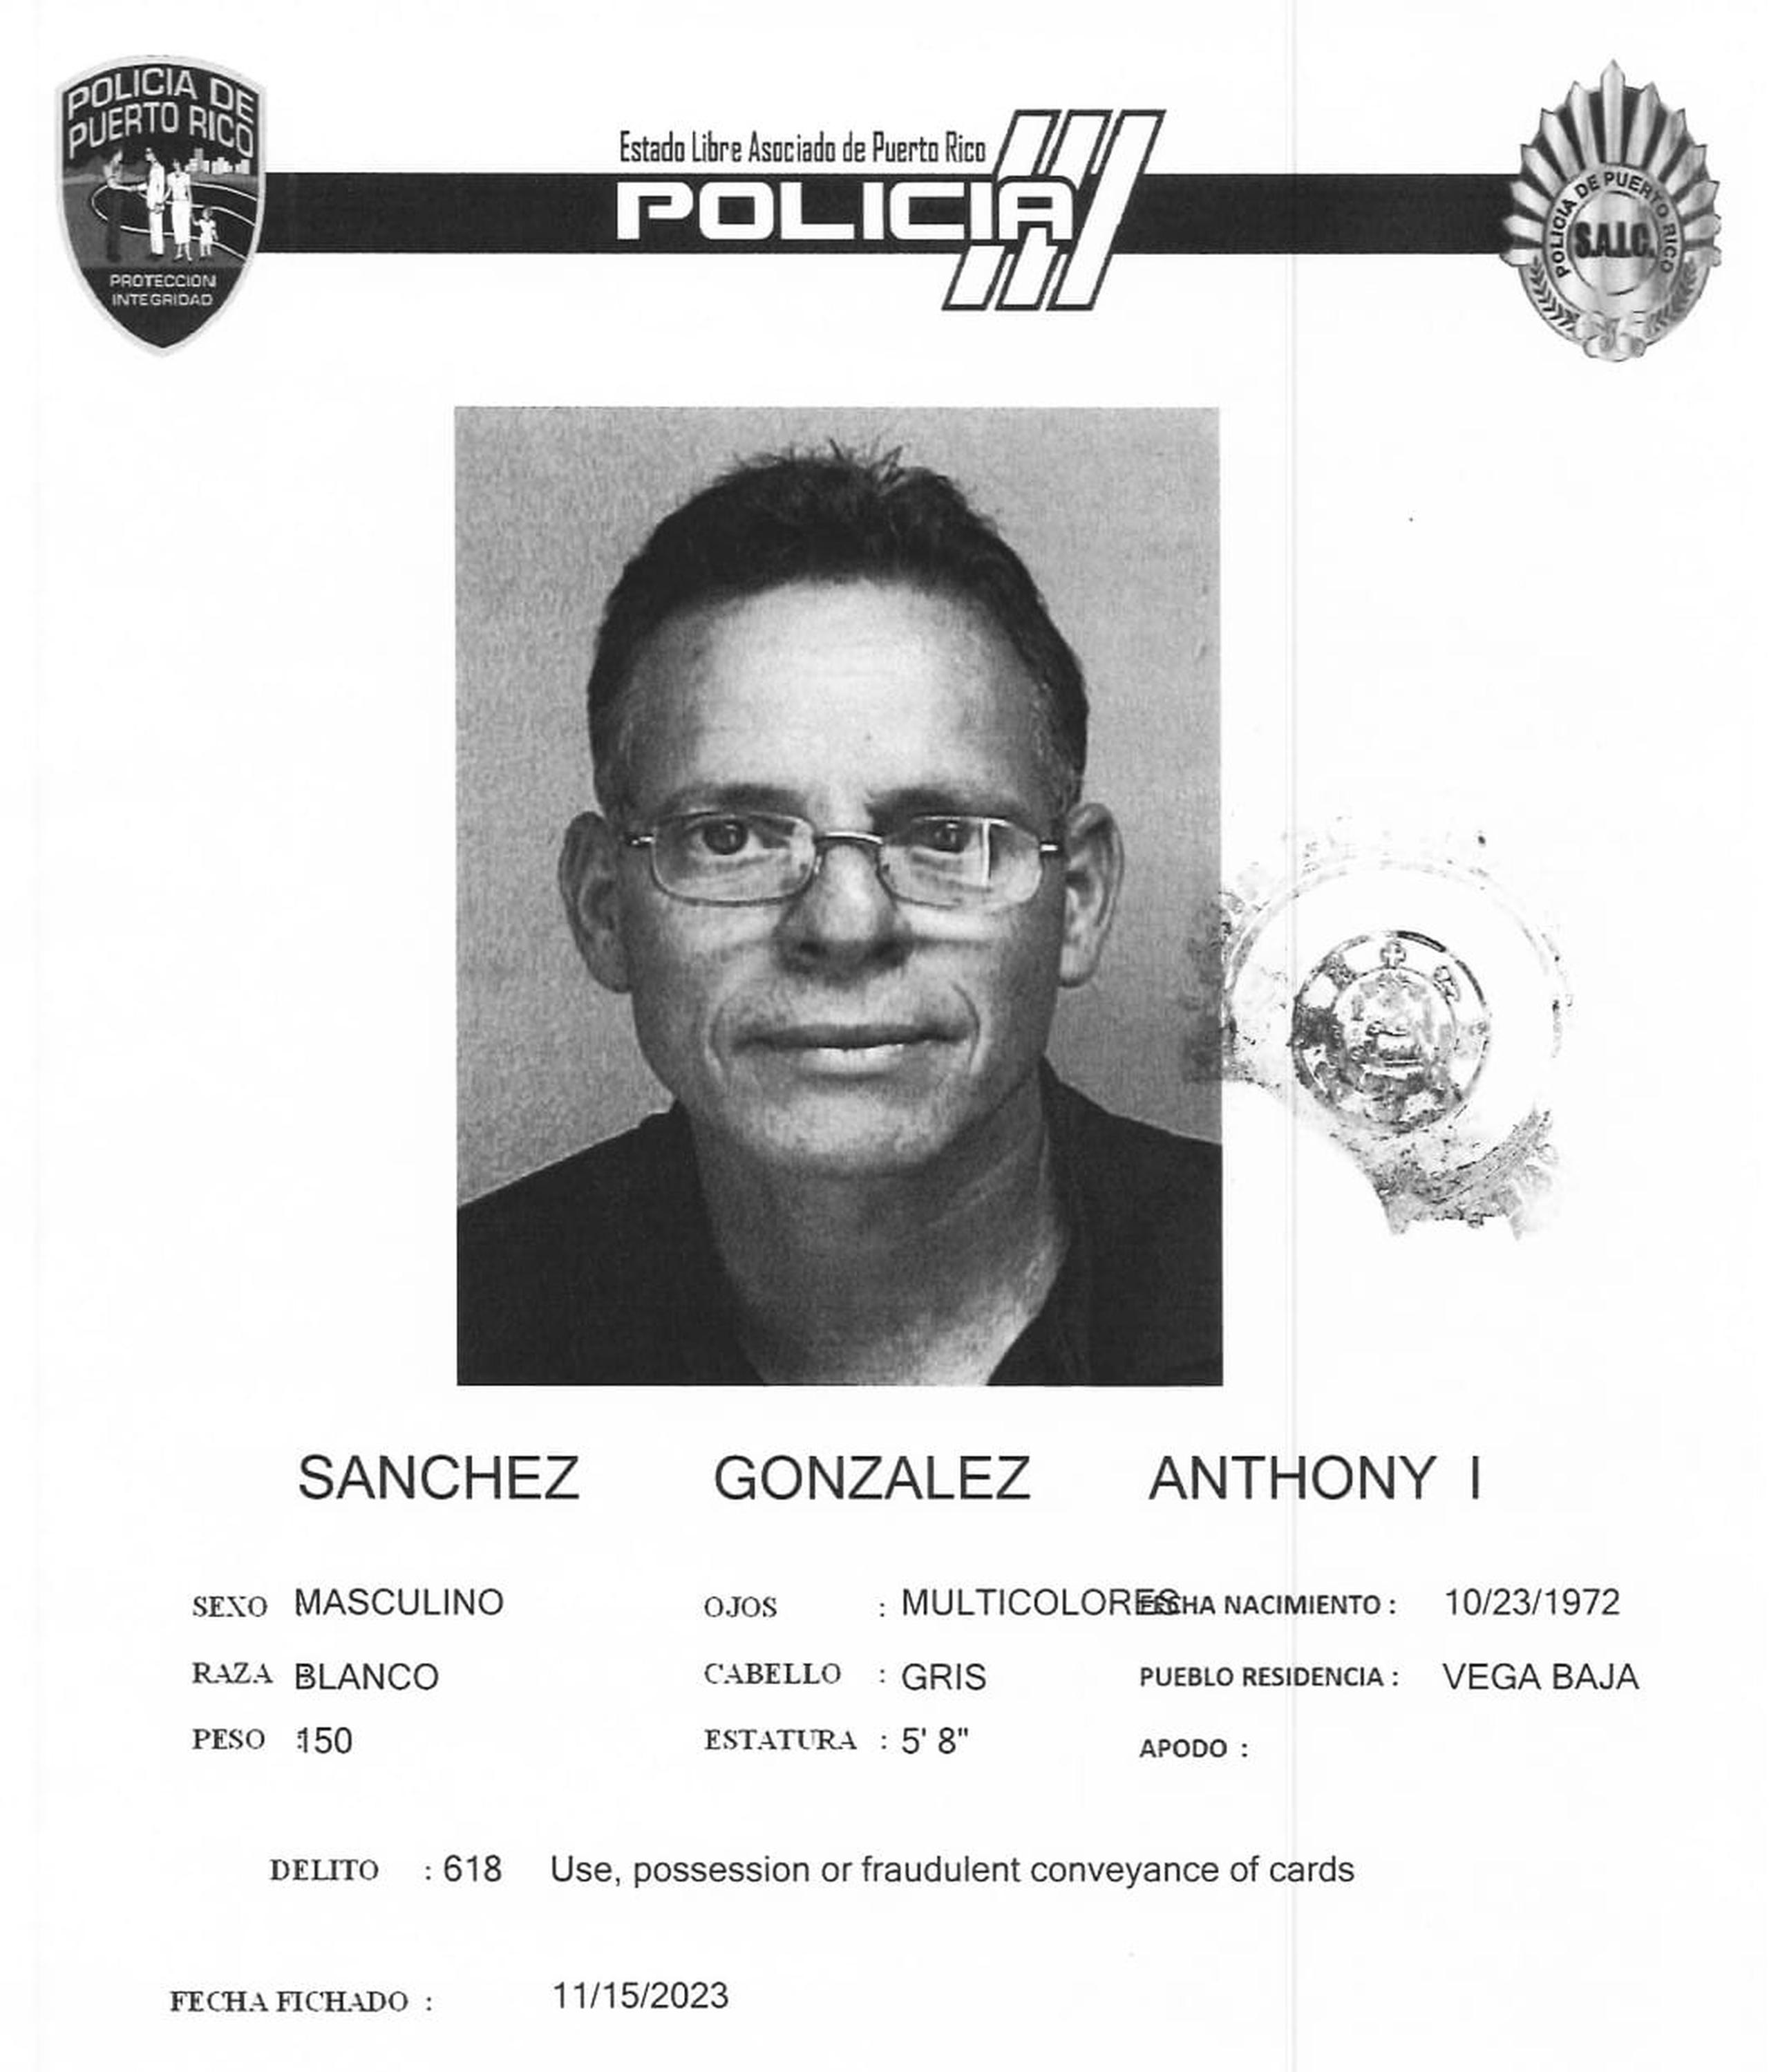 Anthony Israel Sánchez González de 51 años, enfrenta cargos por apropiación ilegal mediante fraude e incumplimiento de contrato en la ejecución de obra.